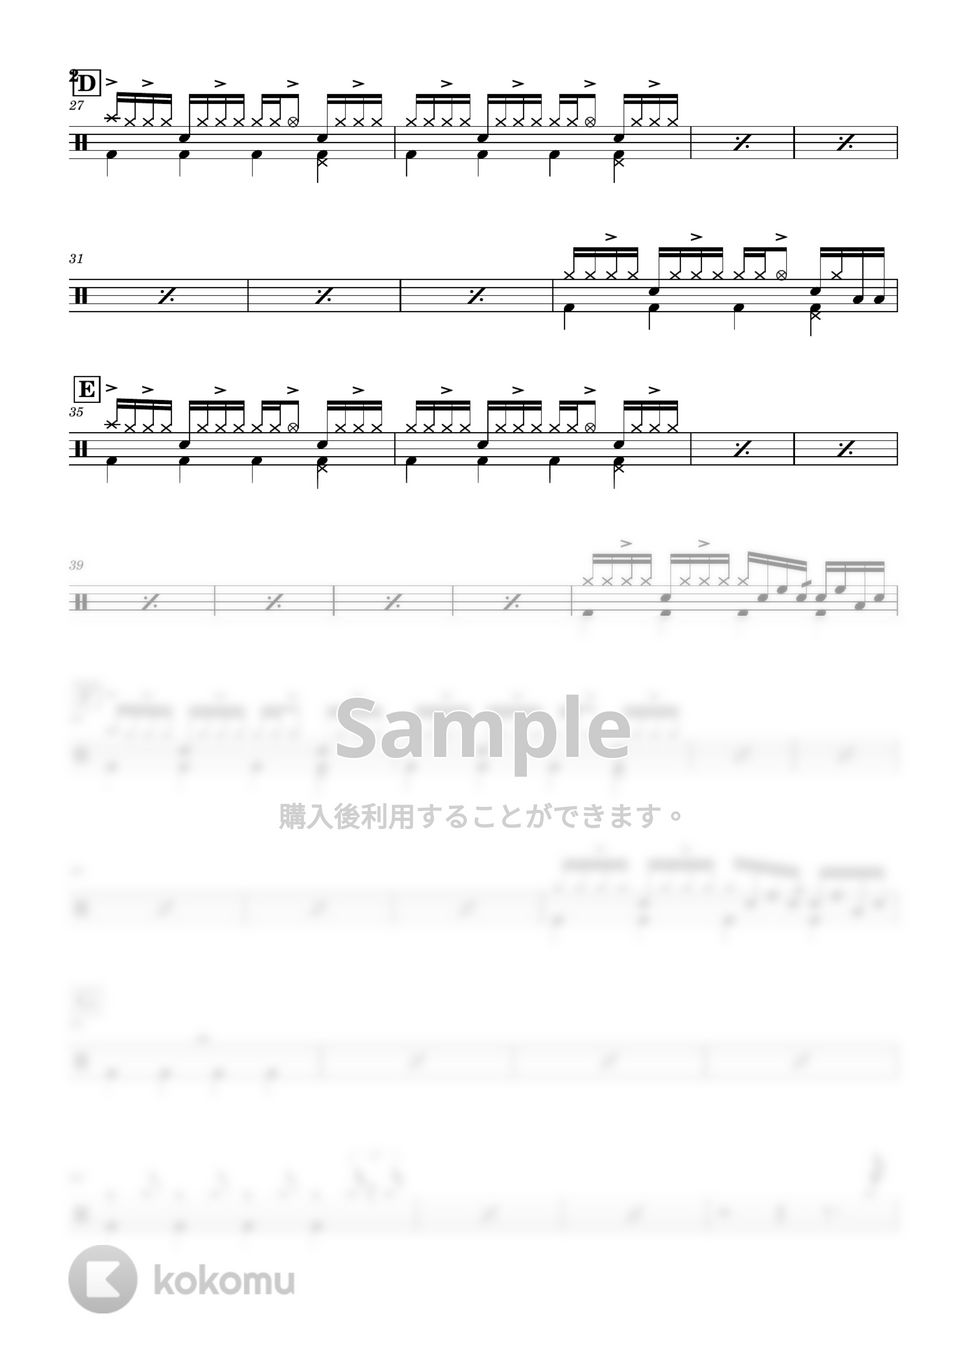 藤井風 - きらり by Cookie's Drum Score